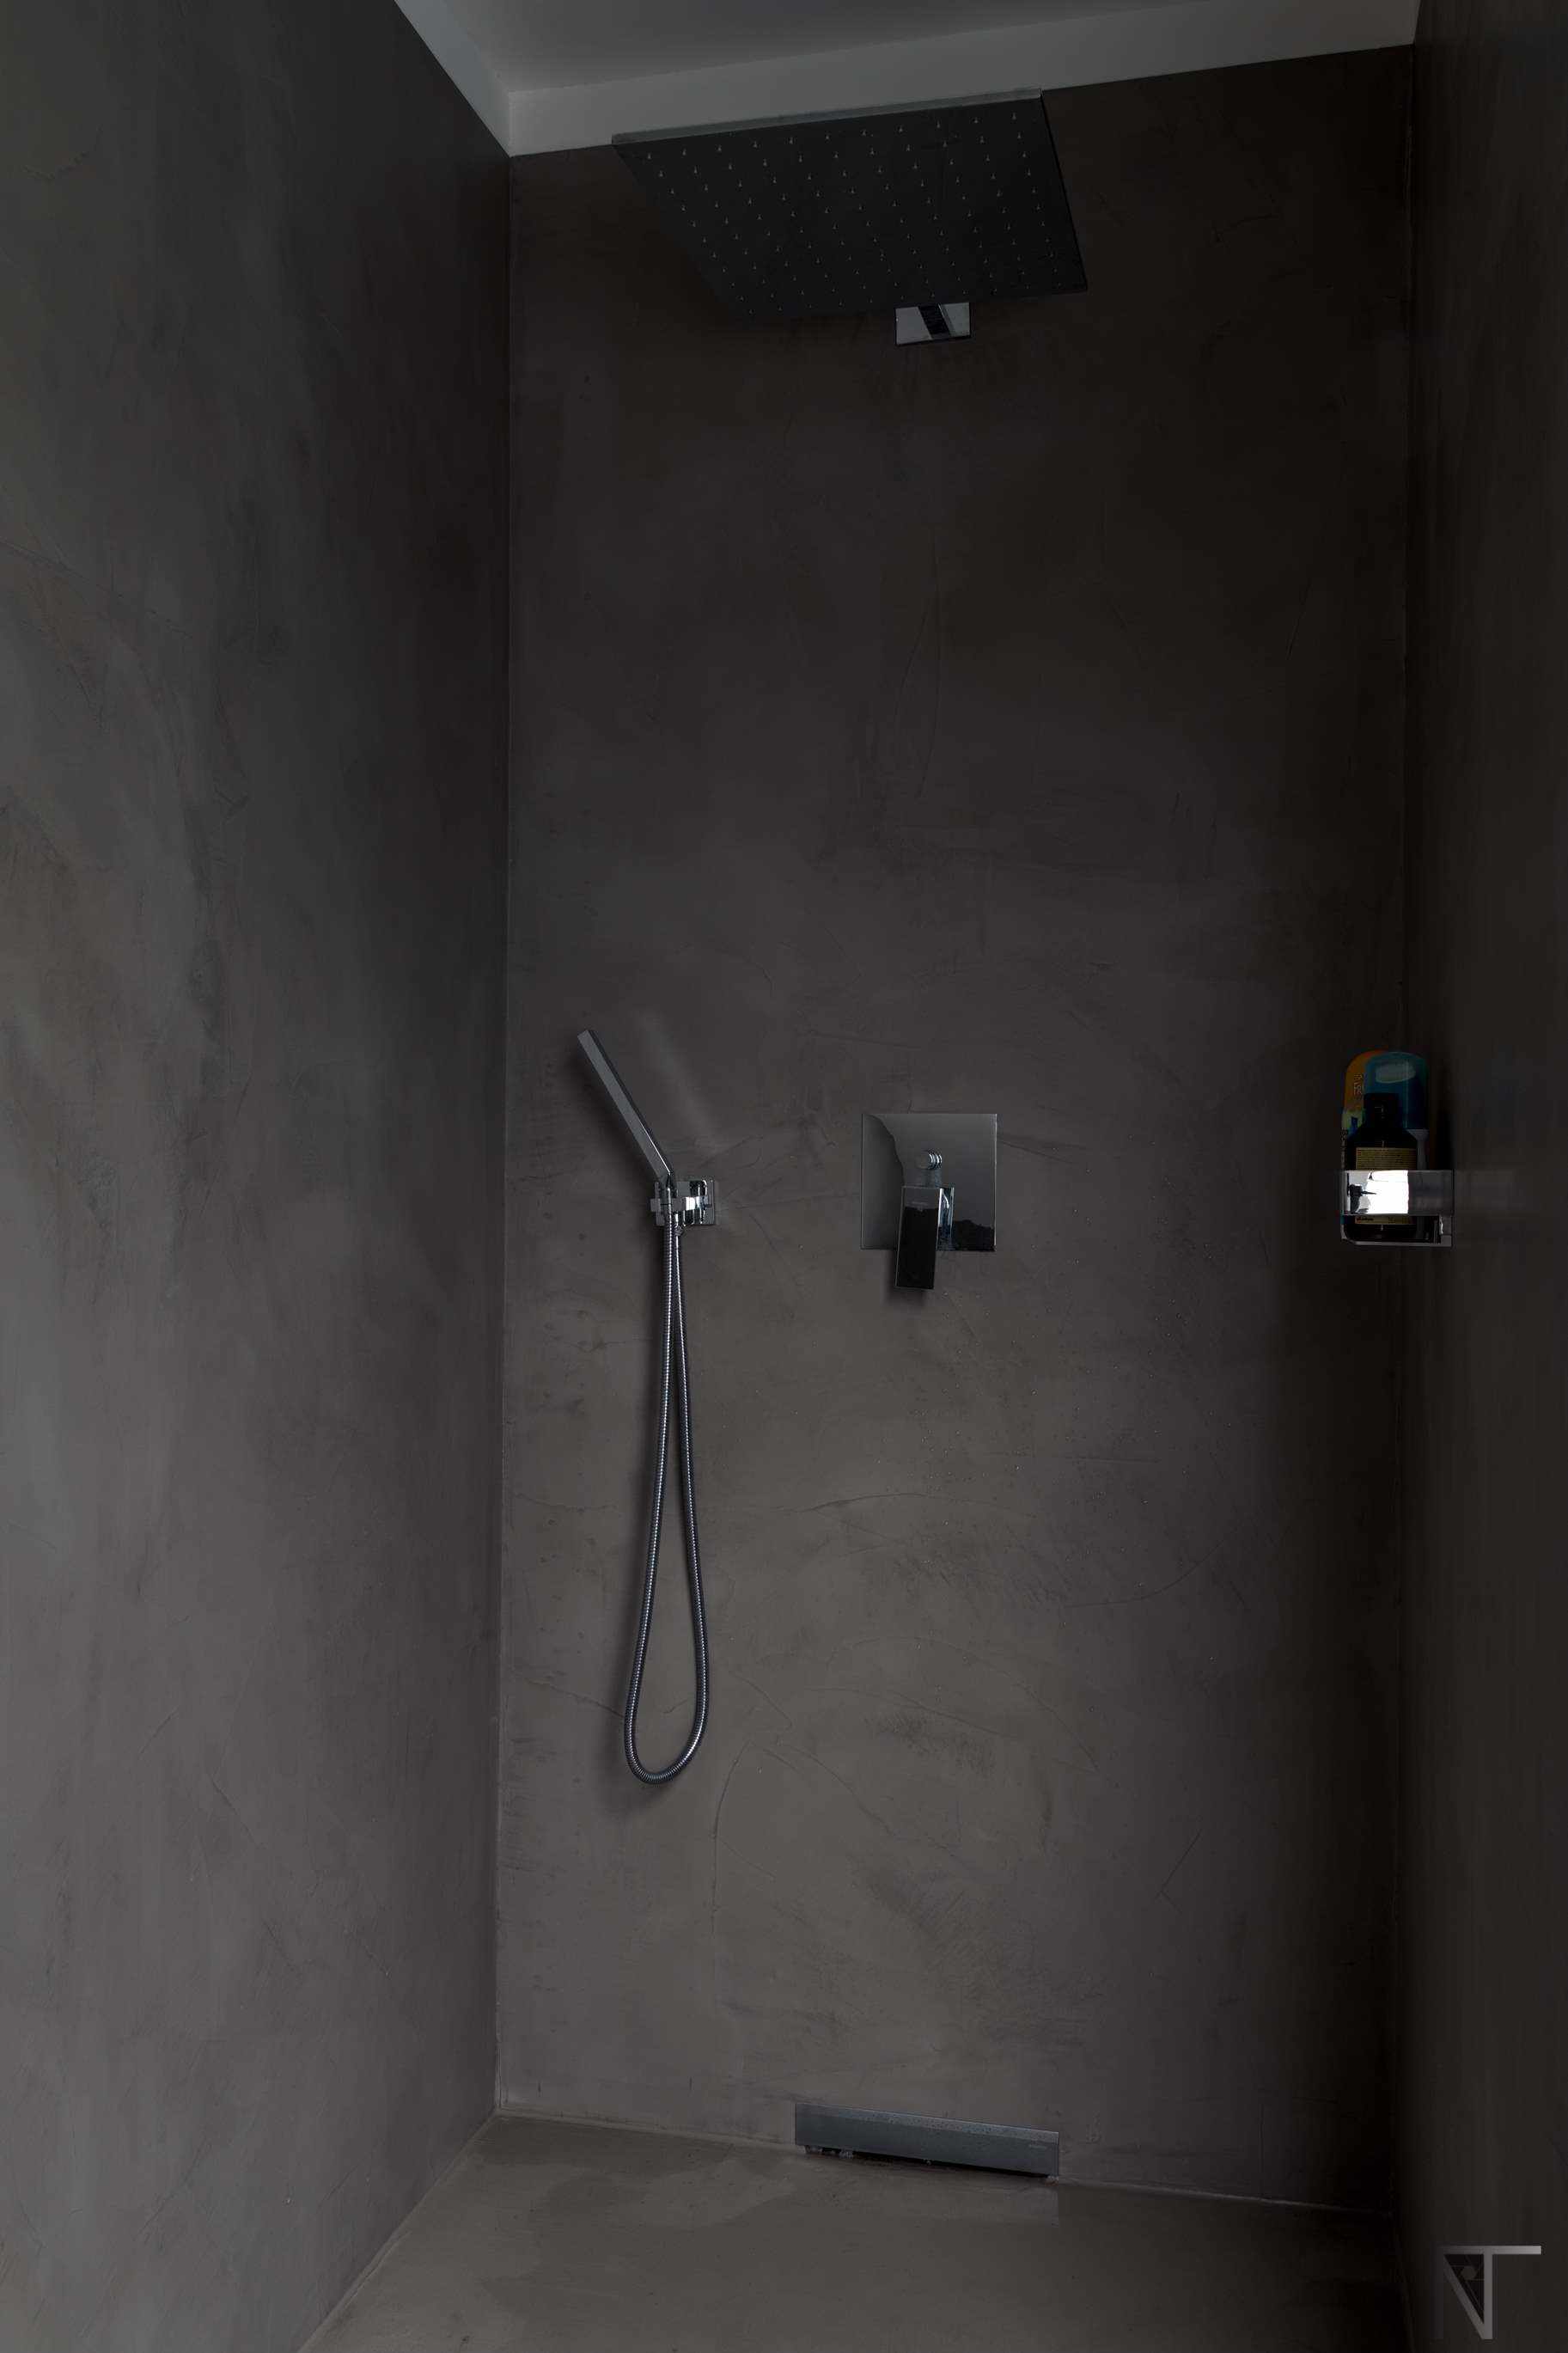 Casa de banho de azulejos reformada com microcimento no chuveiro